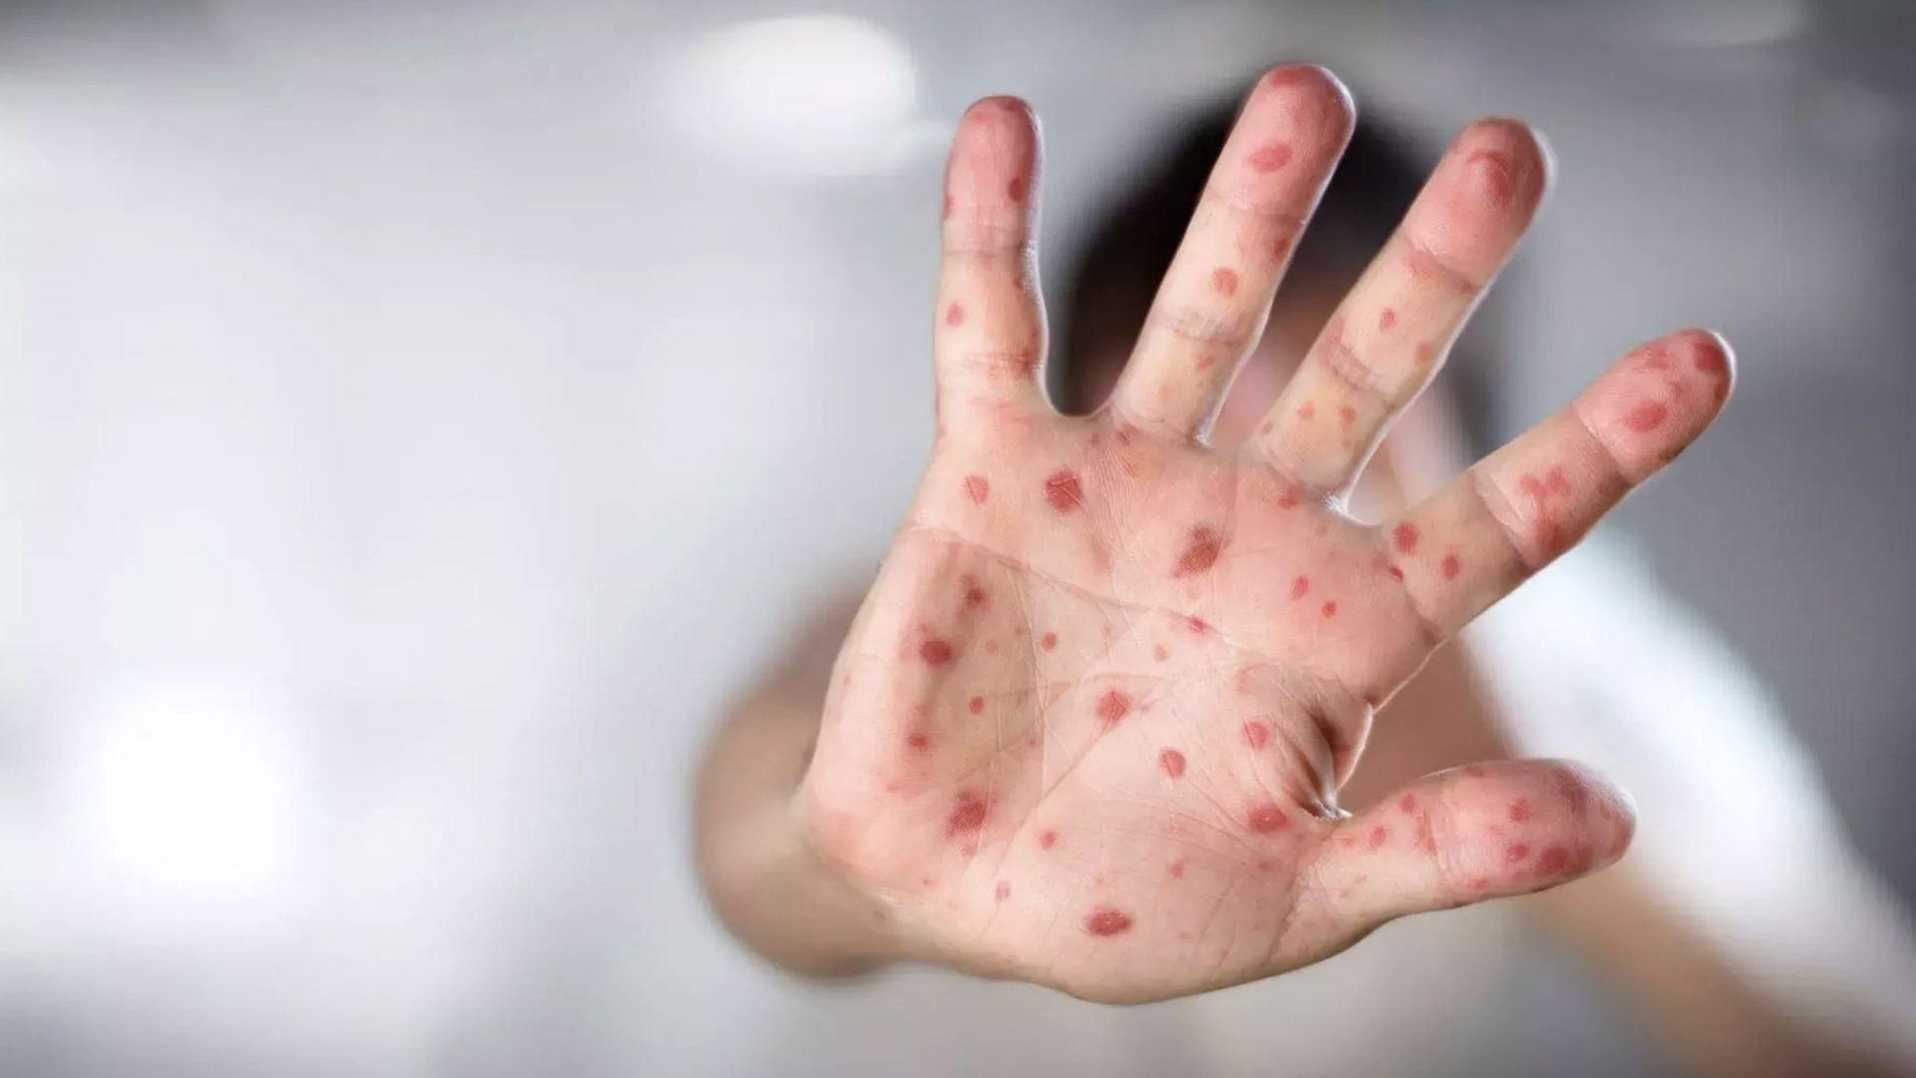 Hasta el 25 de mayo de este año, la Secretaría de Salud ha registrado 1,871 casos probables de sarampión y rubéola